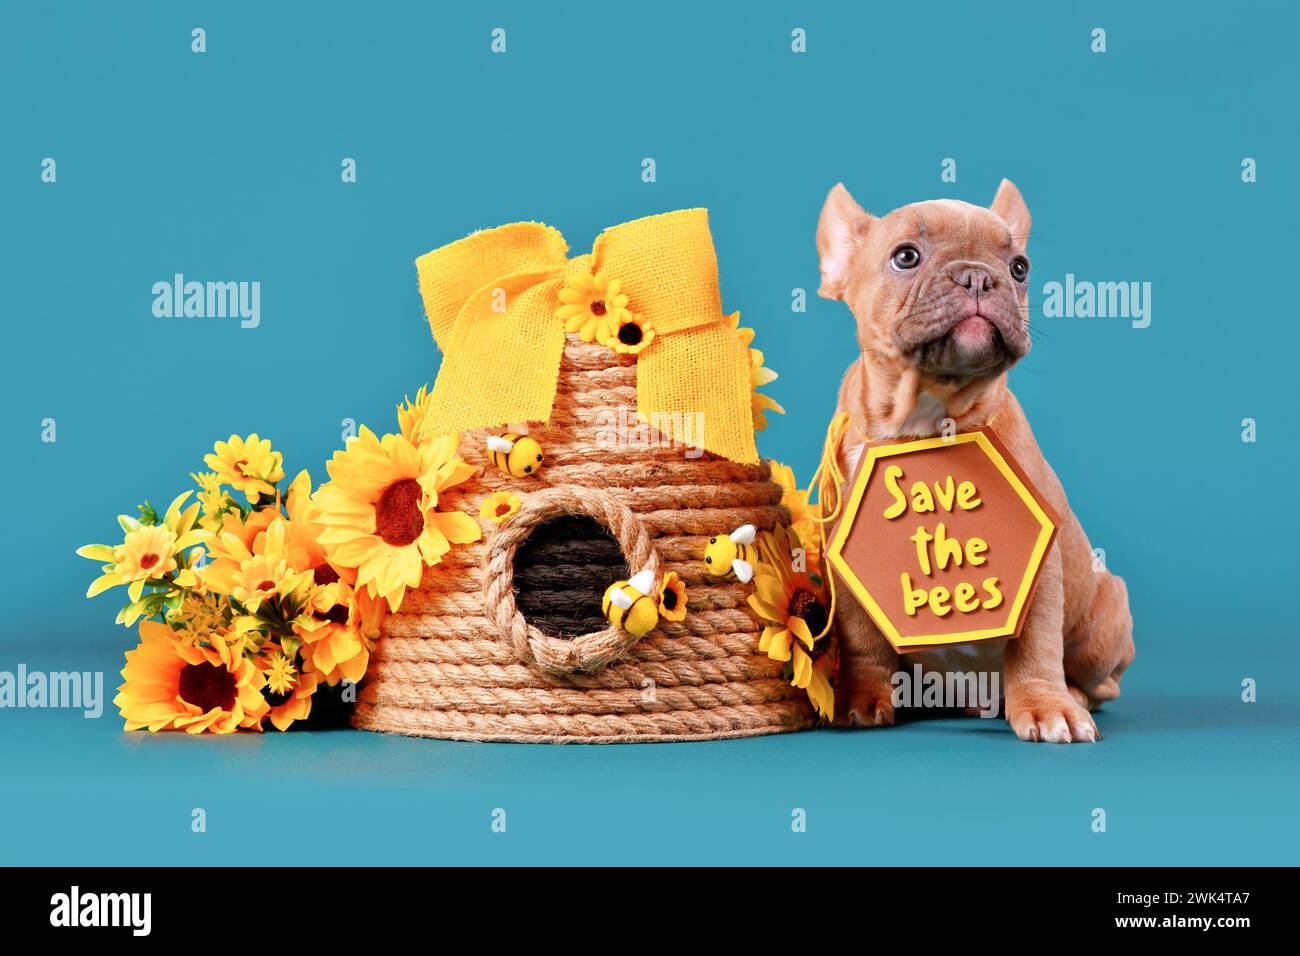 Cucciolo di cane Bulldog francese Fawn con il cartello "Save the Bees" accanto all'alveare e fiori su sfondo azzurro Foto Stock